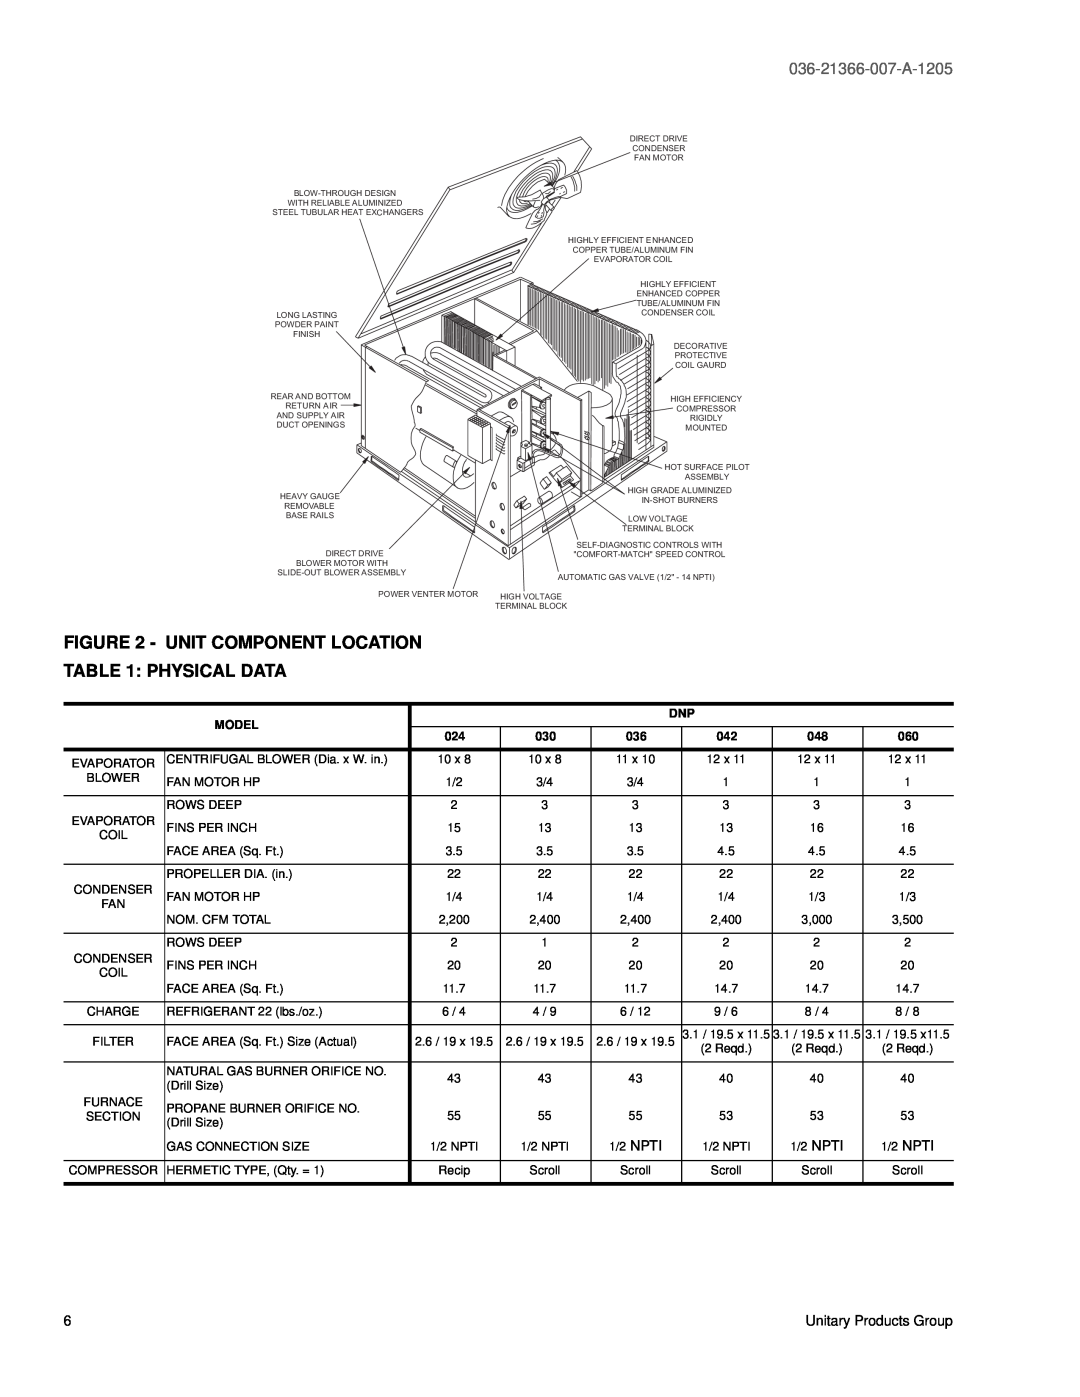 York DNP060, DNP048, DNP030, DNP024, DNP042, DNP036 warranty Unit Component Location, Physical Data, 036-21366-007-A-1205, Model 